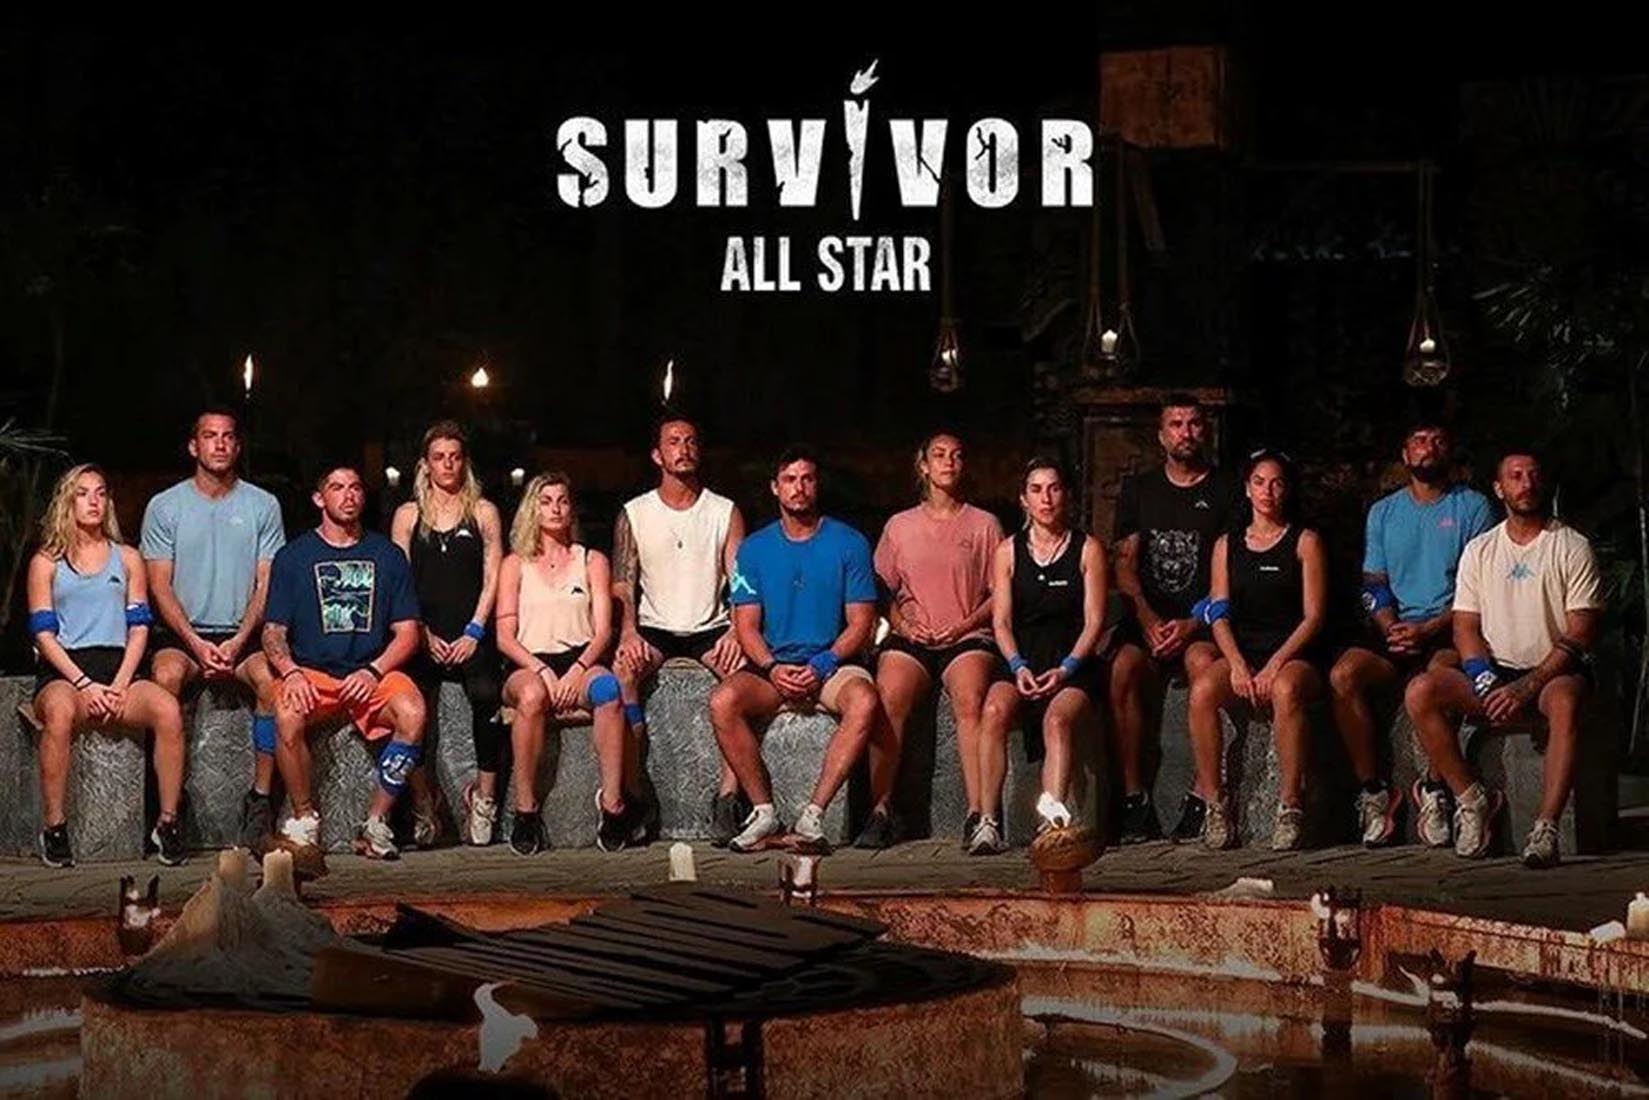 Survivor dokunulmazlık oyununu kim kazandı? 21 Şubat Survivor All Star'da dokunulmazlık oyununu kazanan hangi takım oldu?